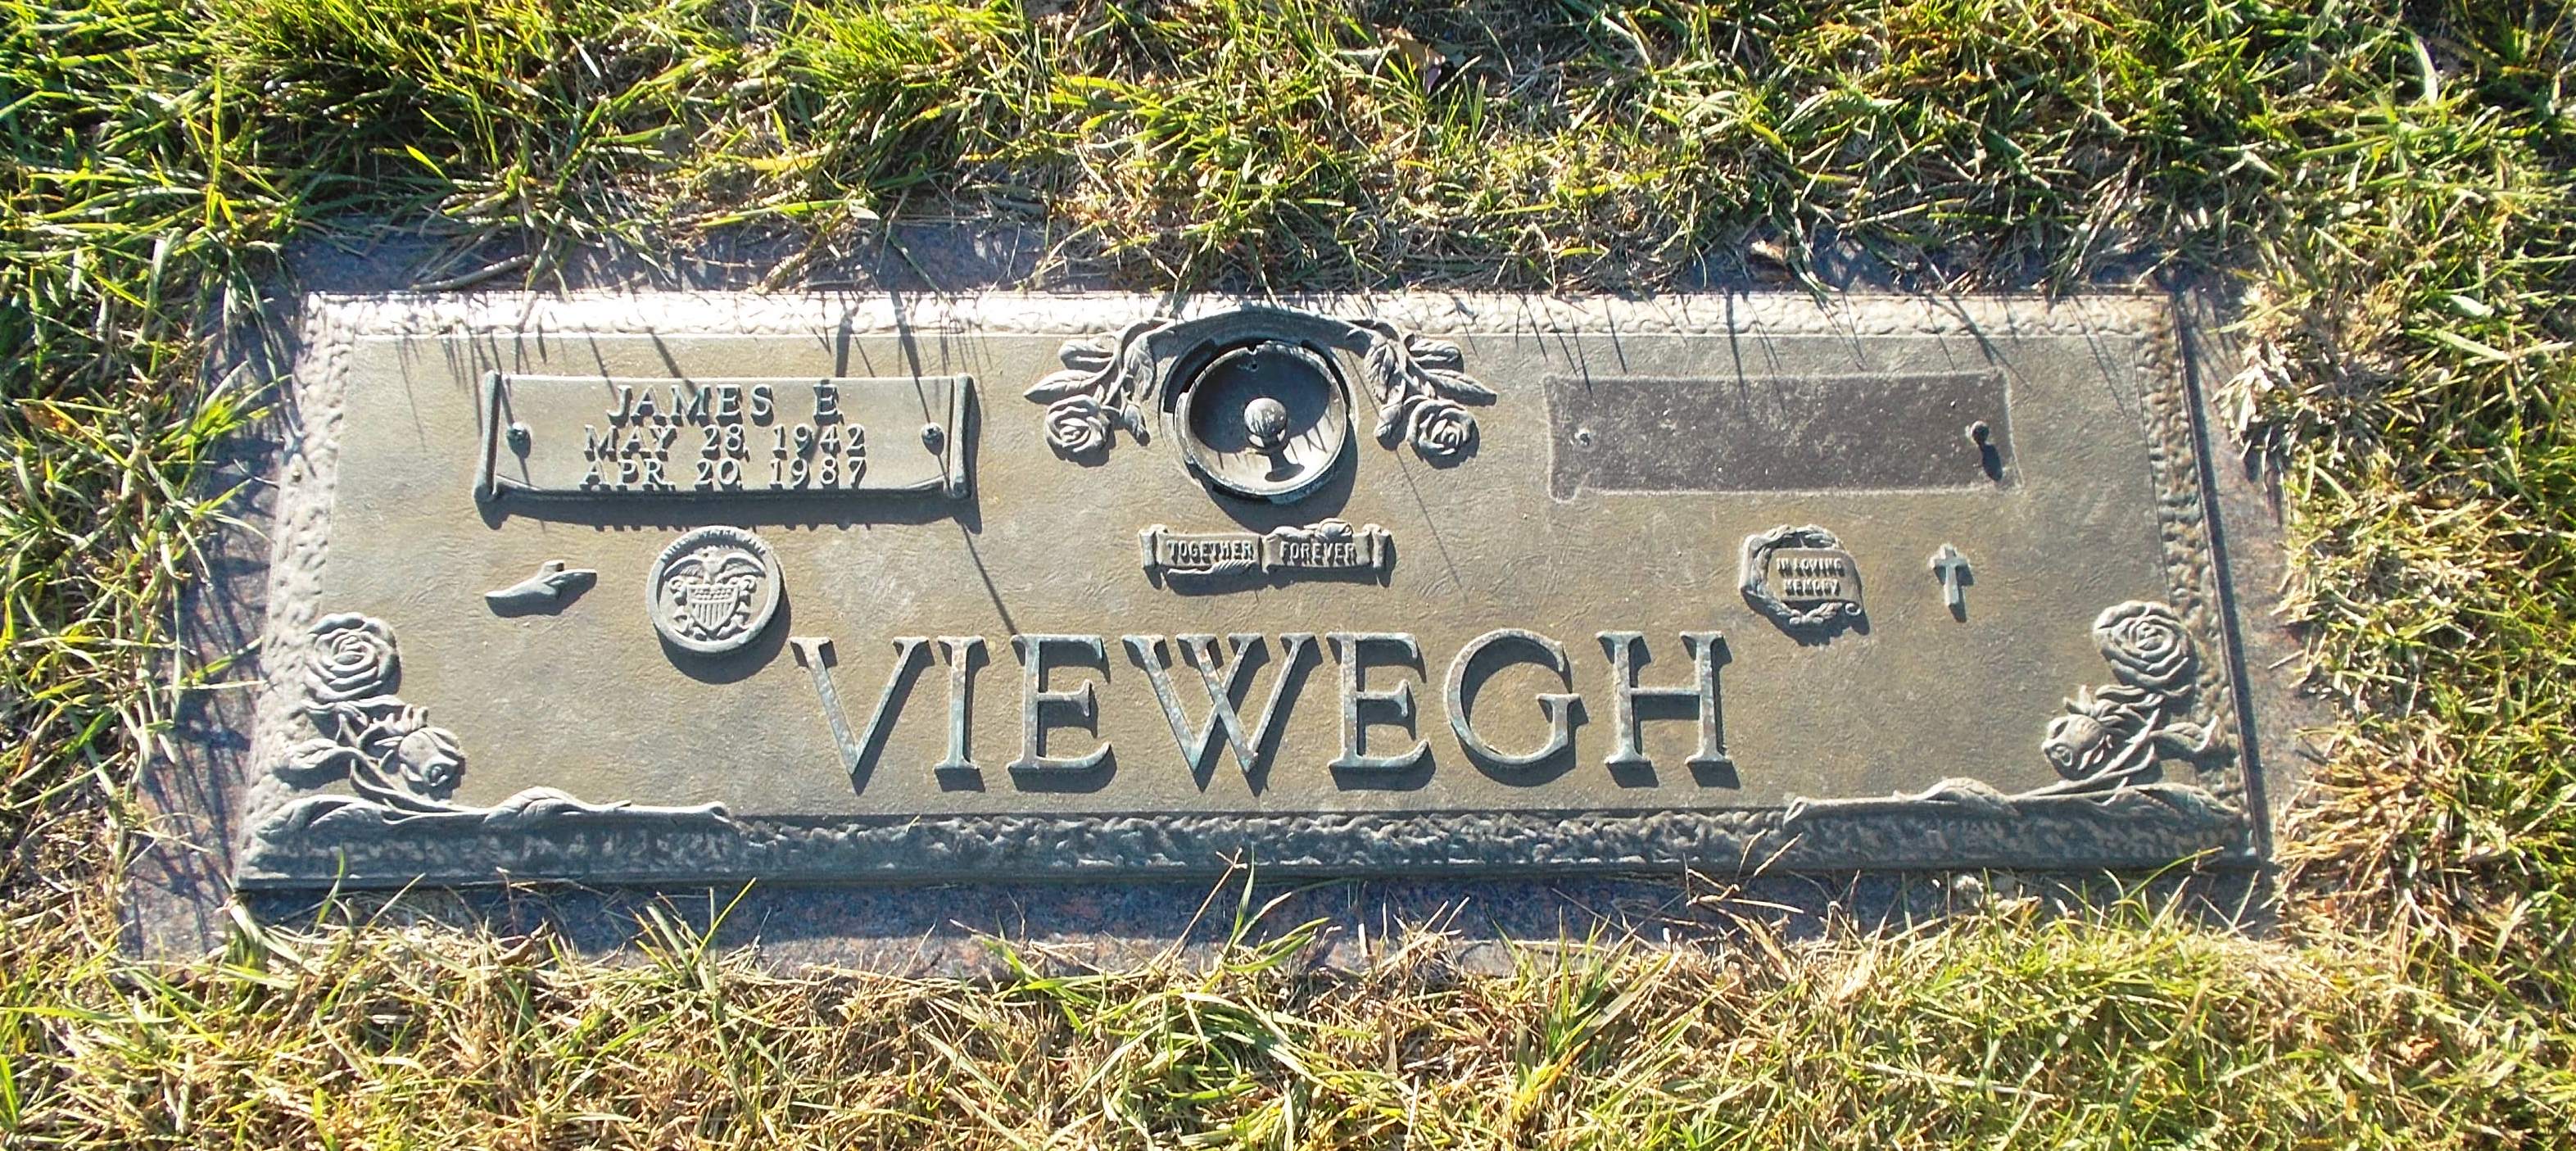 James E Viewegh